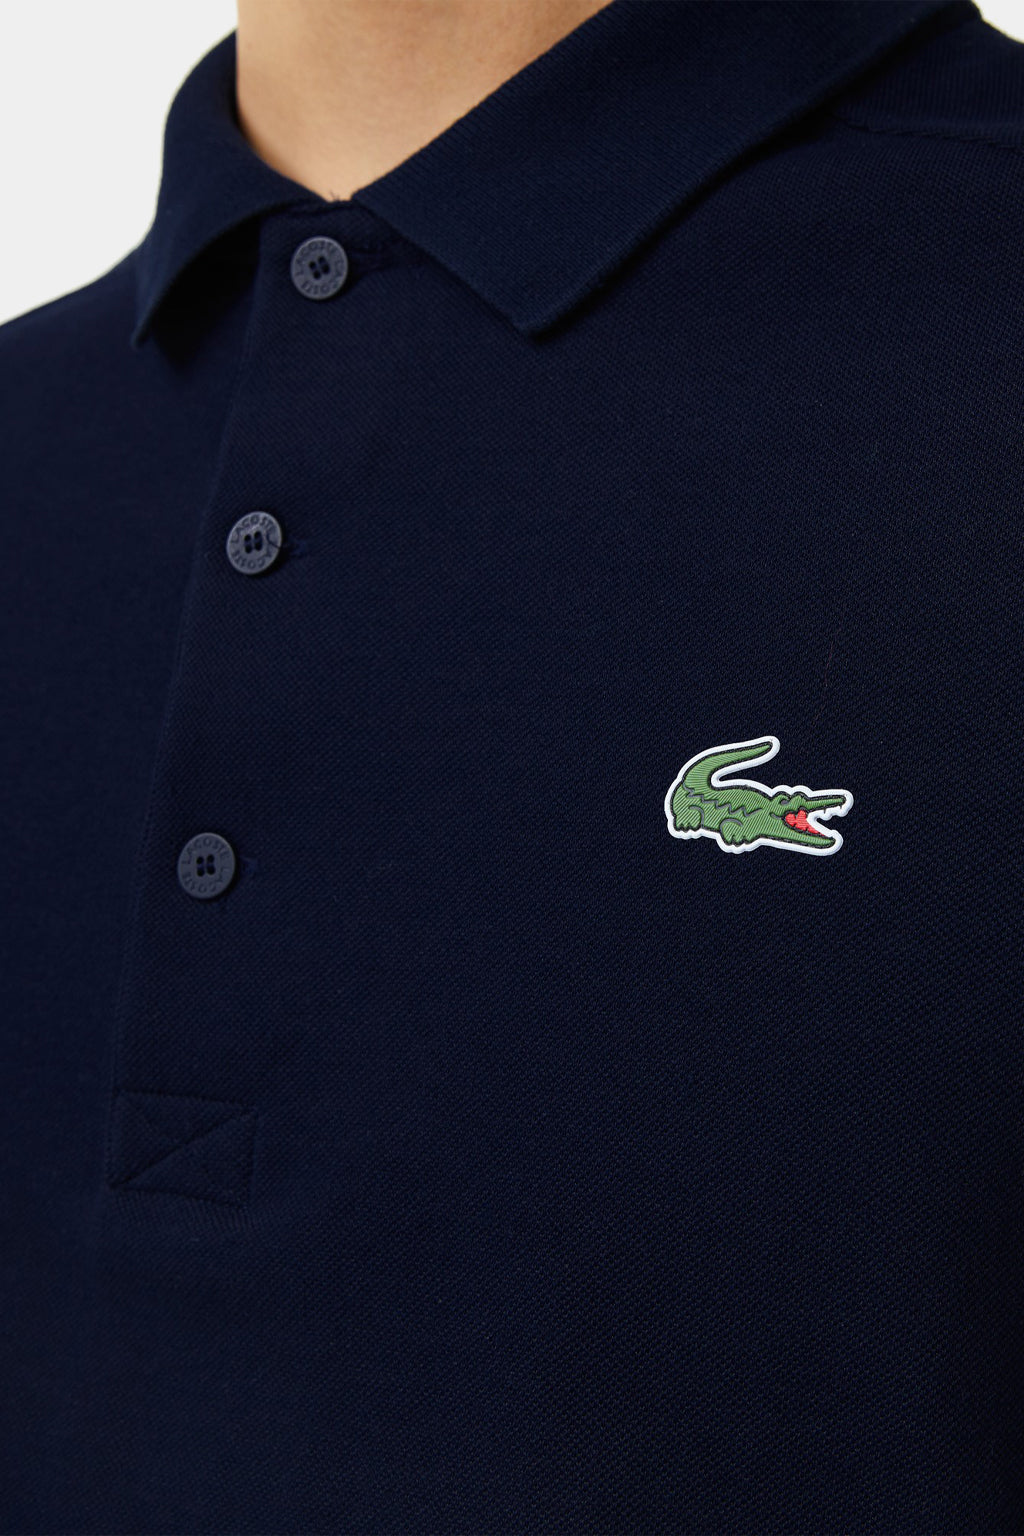 Lacoste - Golf Lacoste Sport Men's Polo Shirt in Organic Cotton Petit Piqué